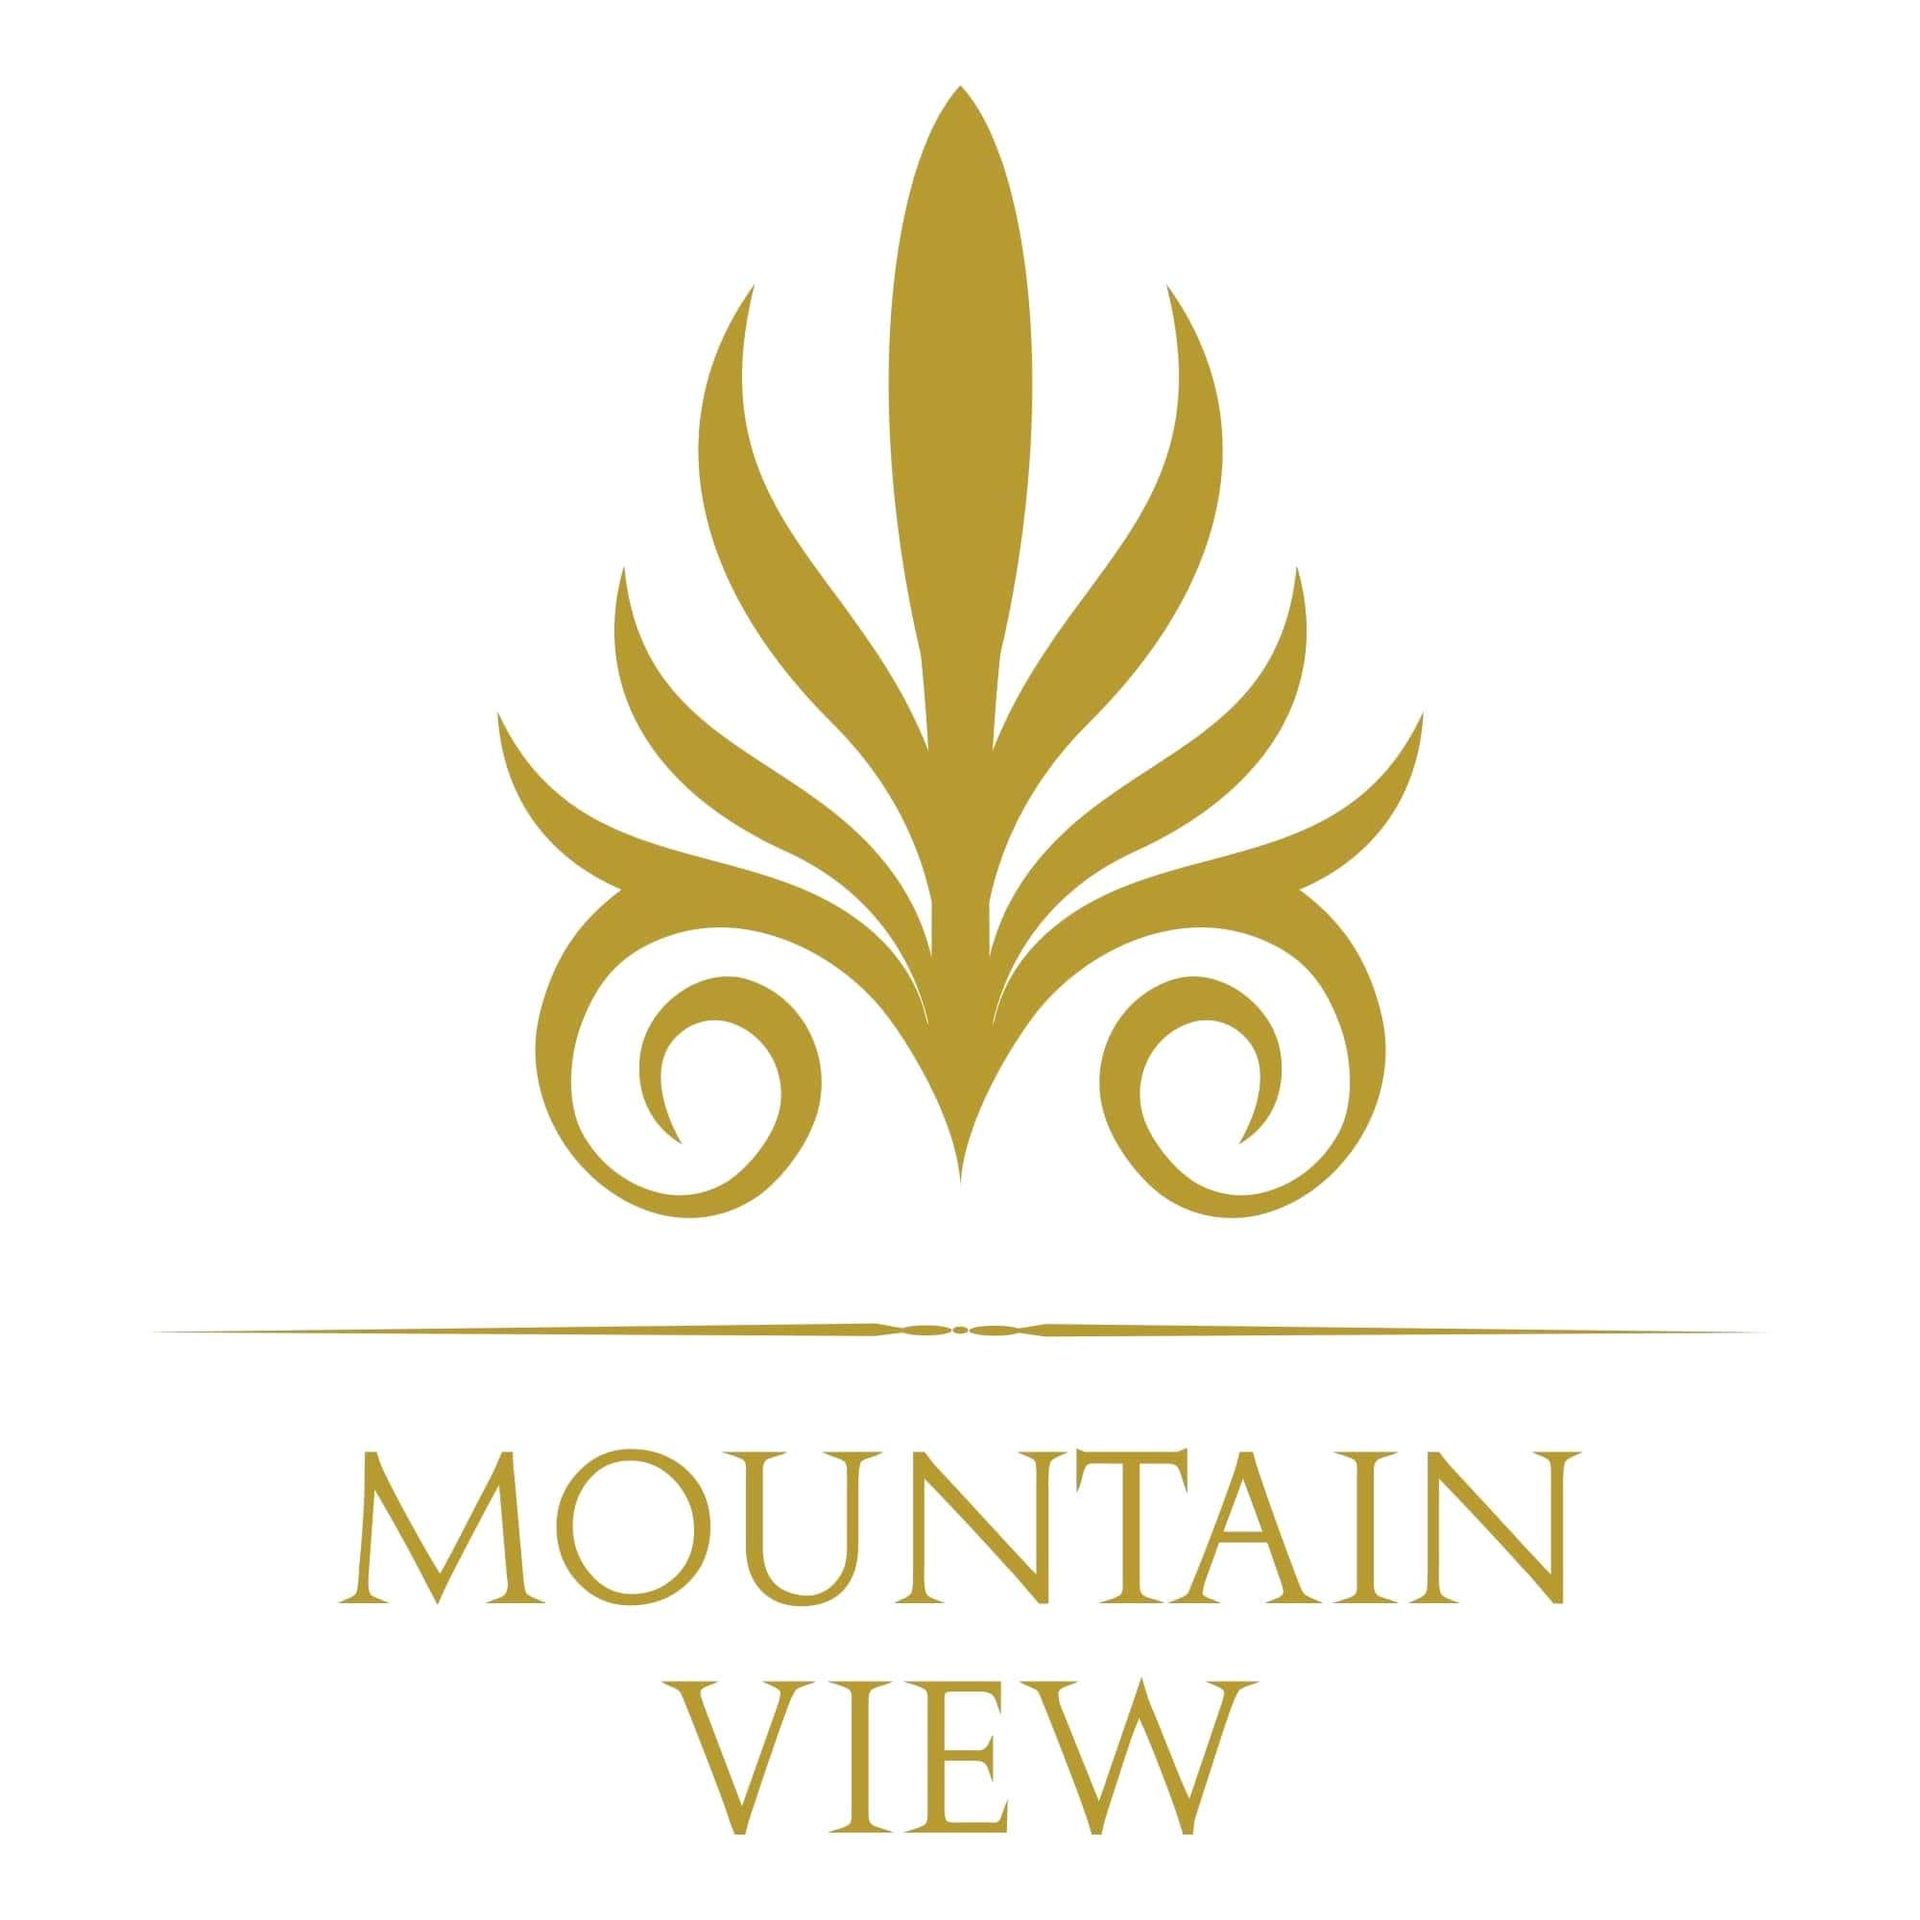 Developer: Mountain View